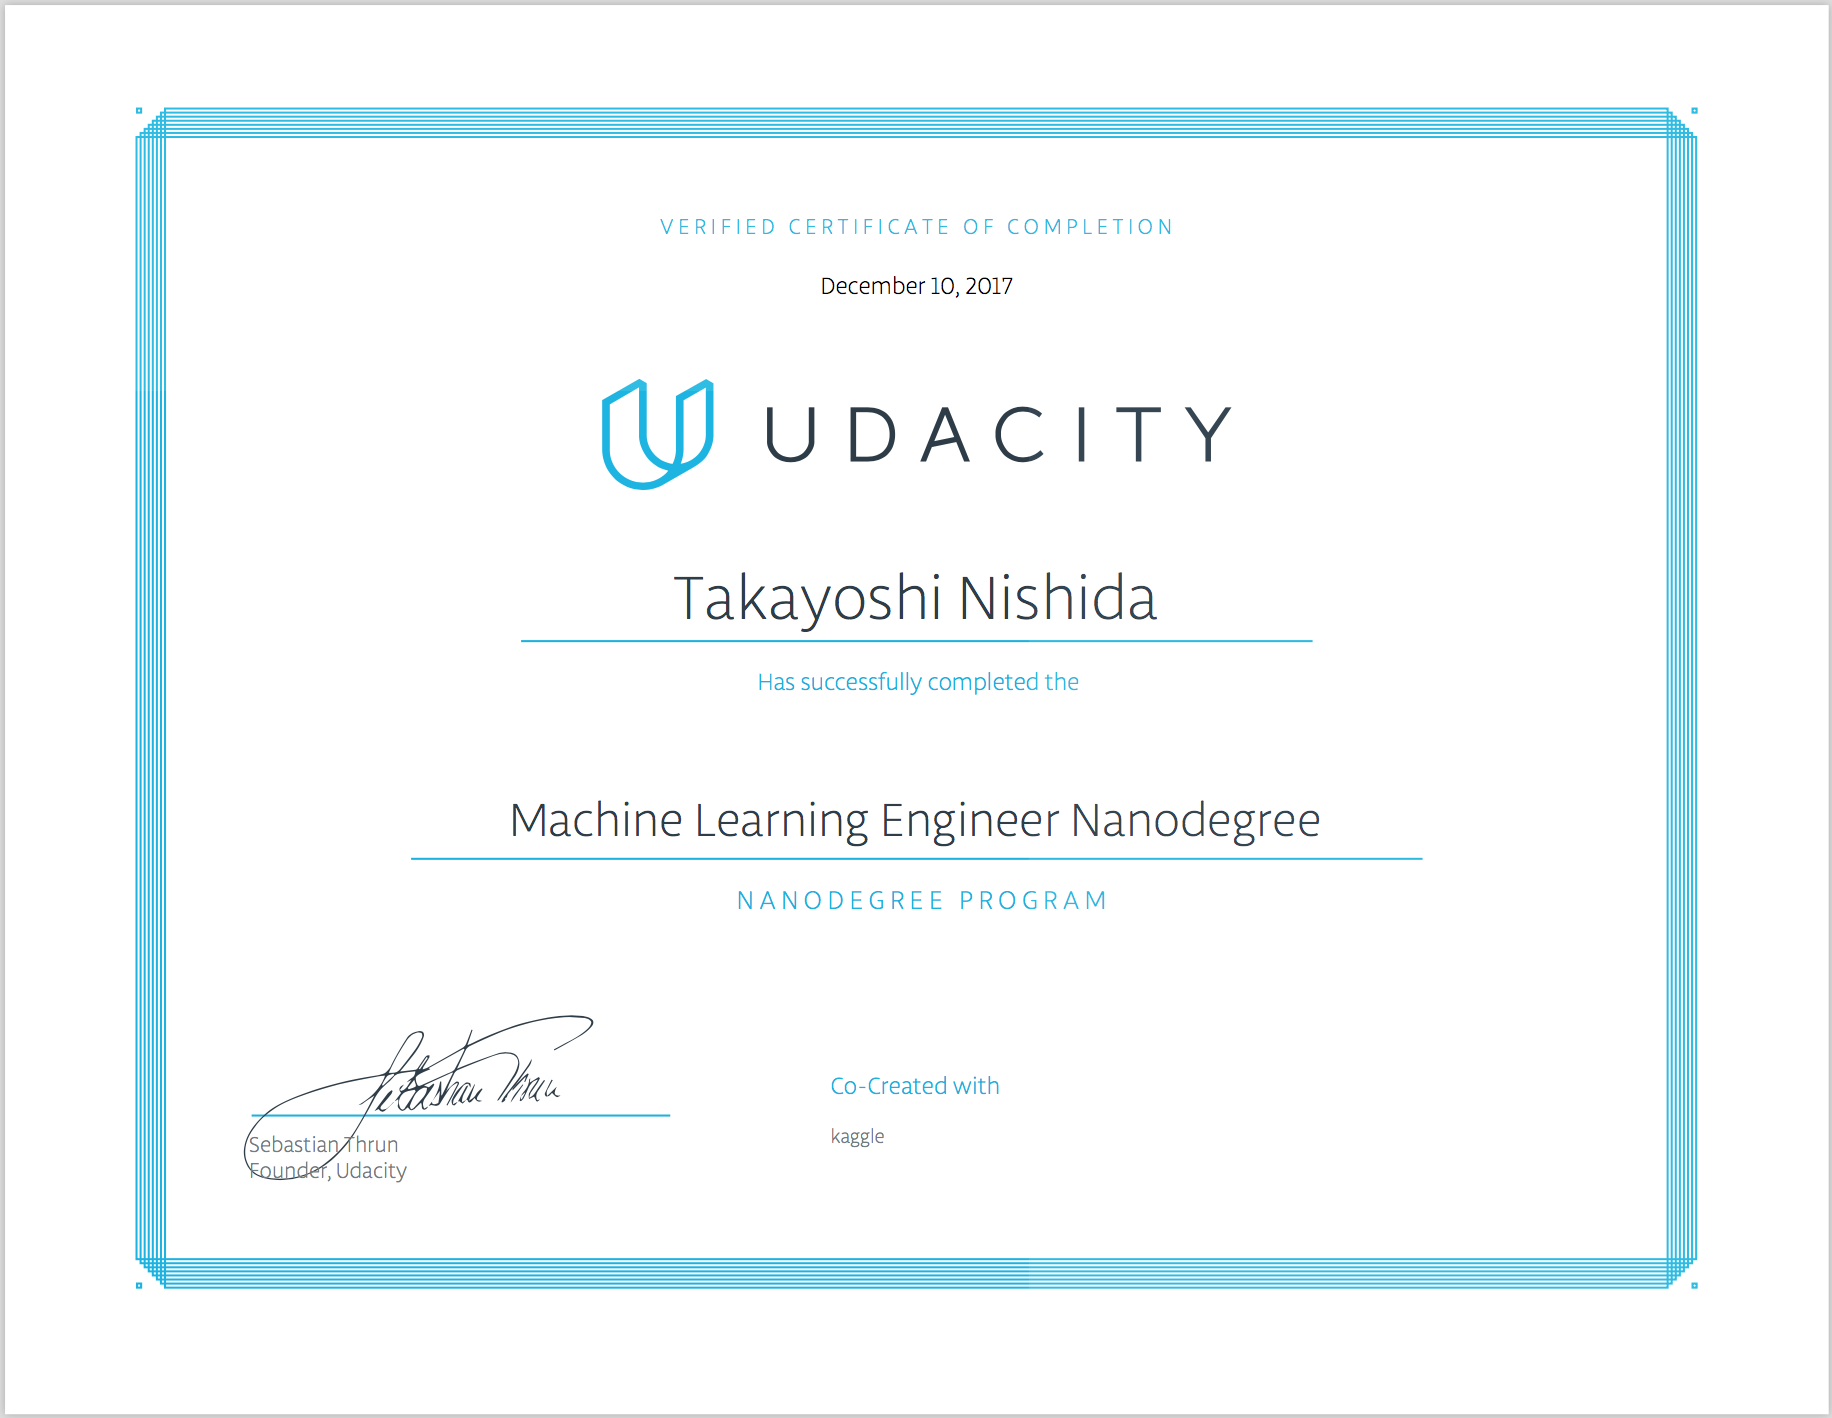 Udacity Graduate Certificate